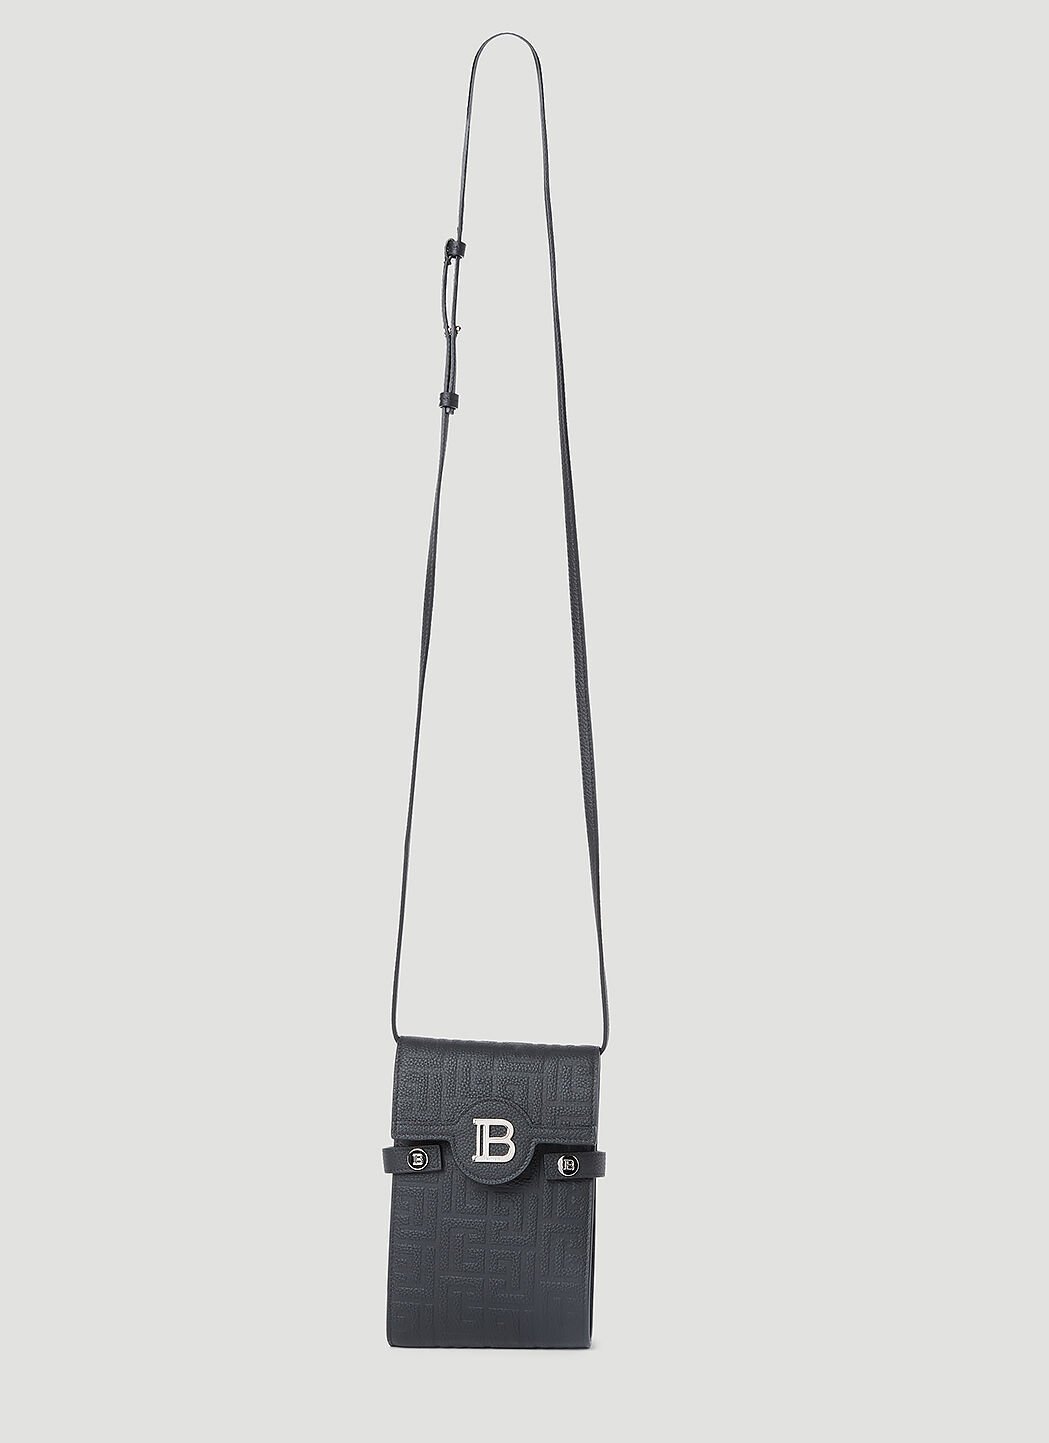 Balmain B-Buzz Leather Phone Pouch White bln0152008